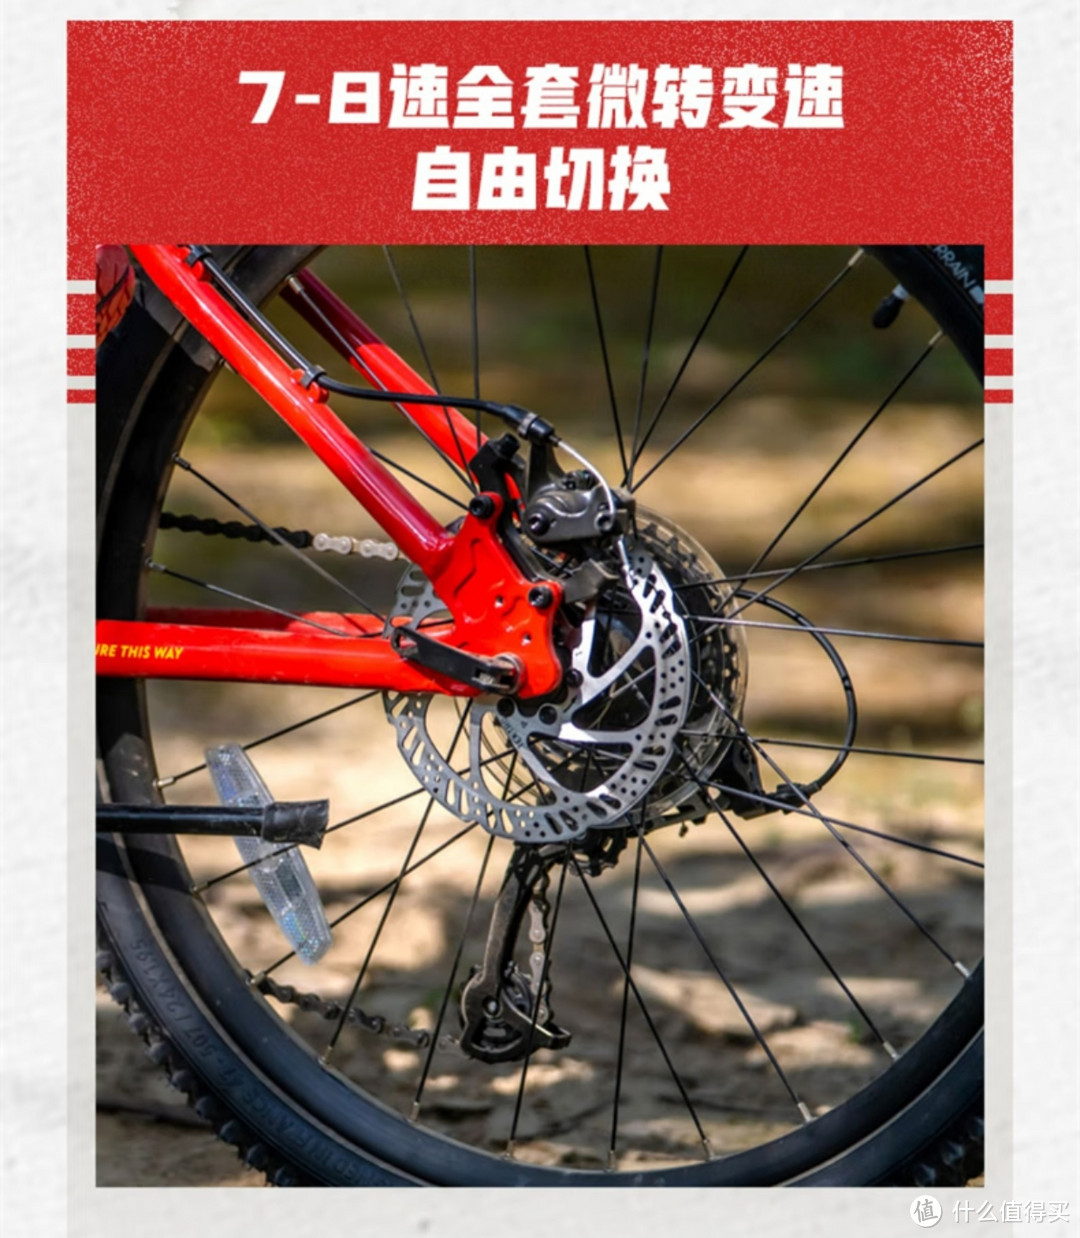 【迪卡侬挖宝】迪卡侬青少年自行车产品线整理（四）20寸自行车——山地自行车